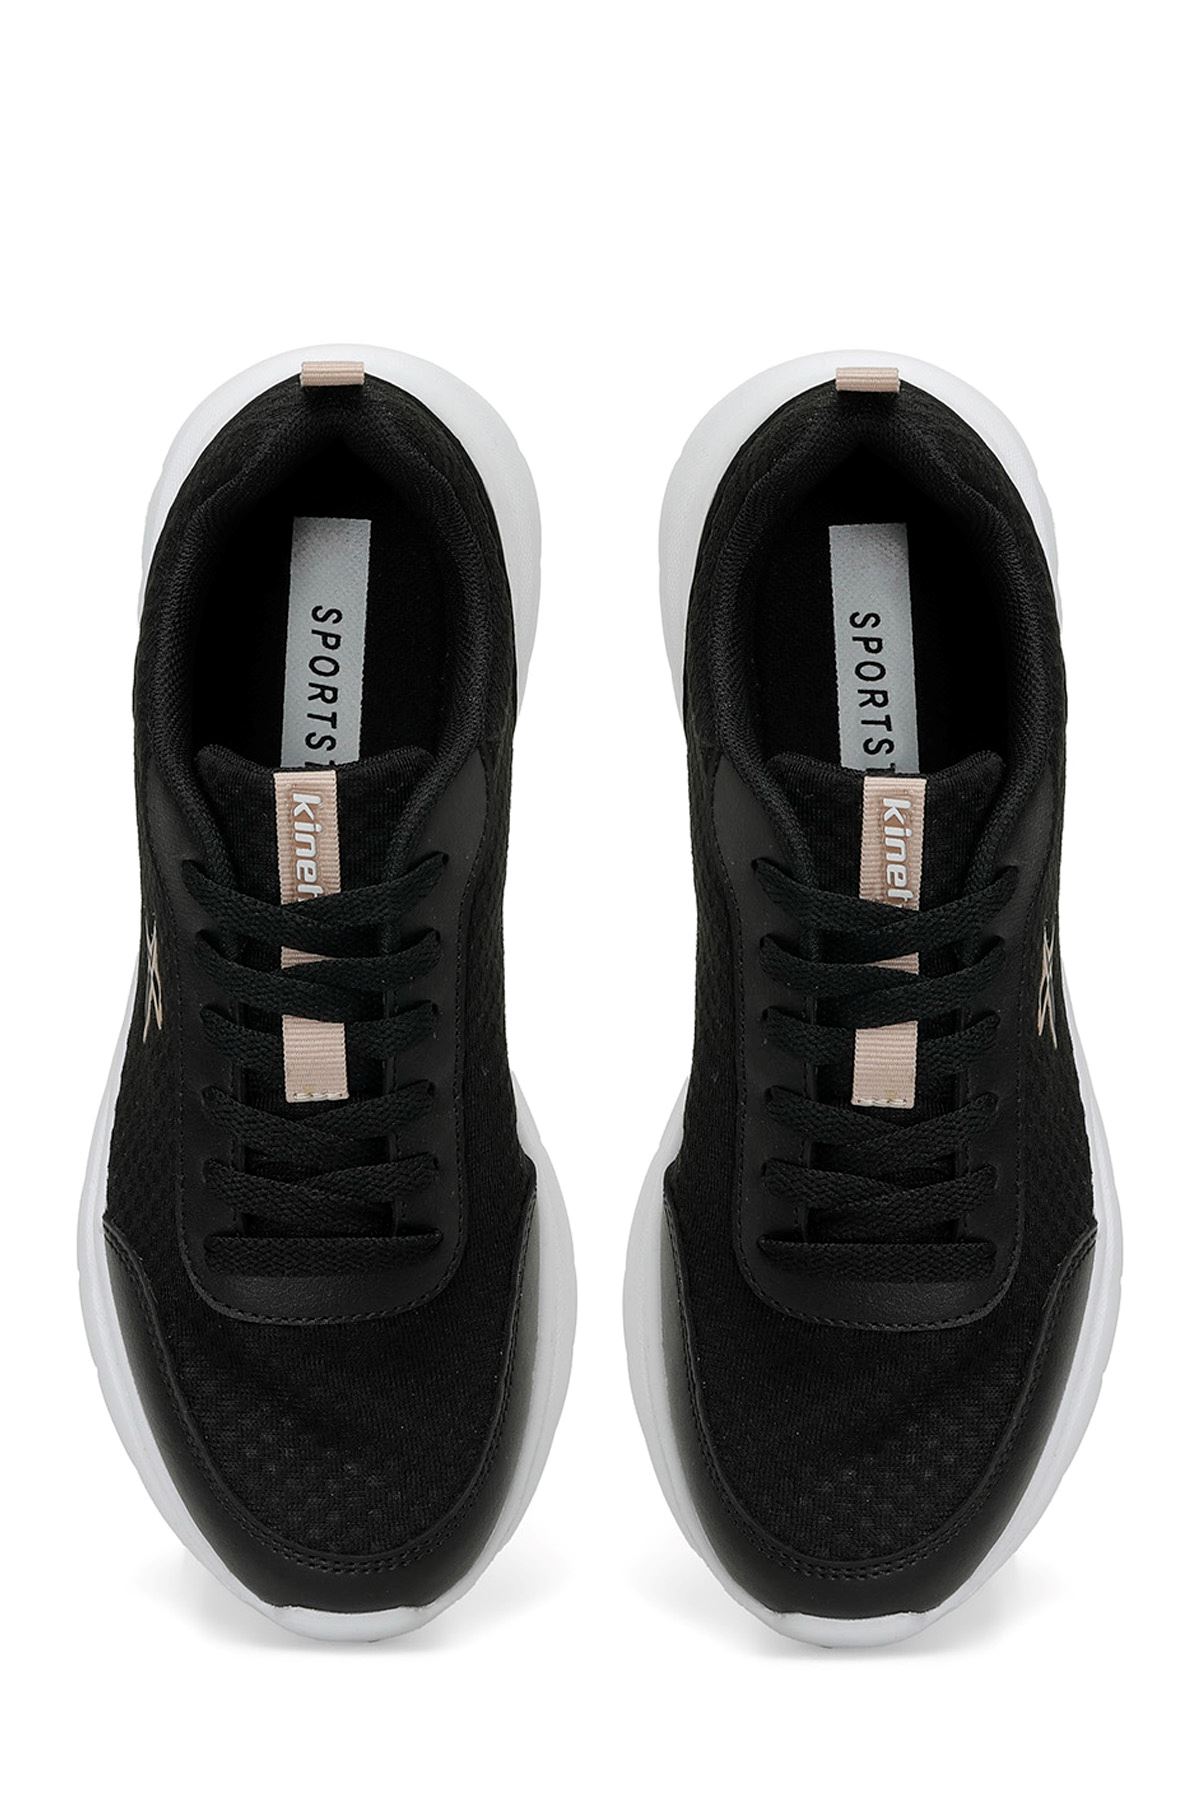 Lena Tx W 4Fx Kinetıx Kadın Siyah Spor Ayakkabı - 101490880